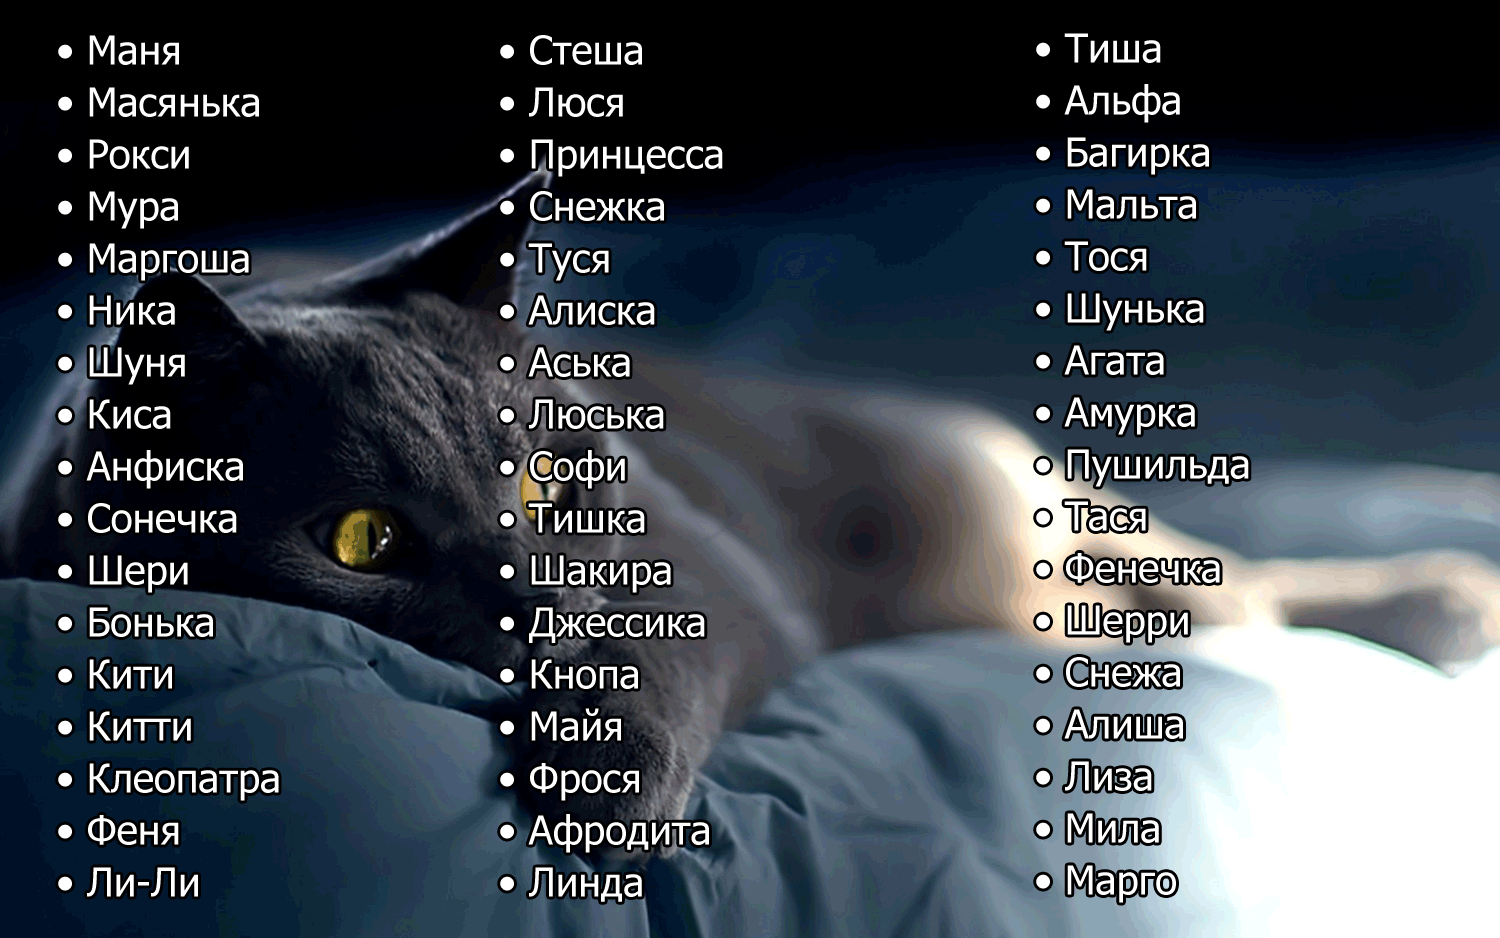 Смешные имена для кошек и котов | клички для девочек и мальчиков